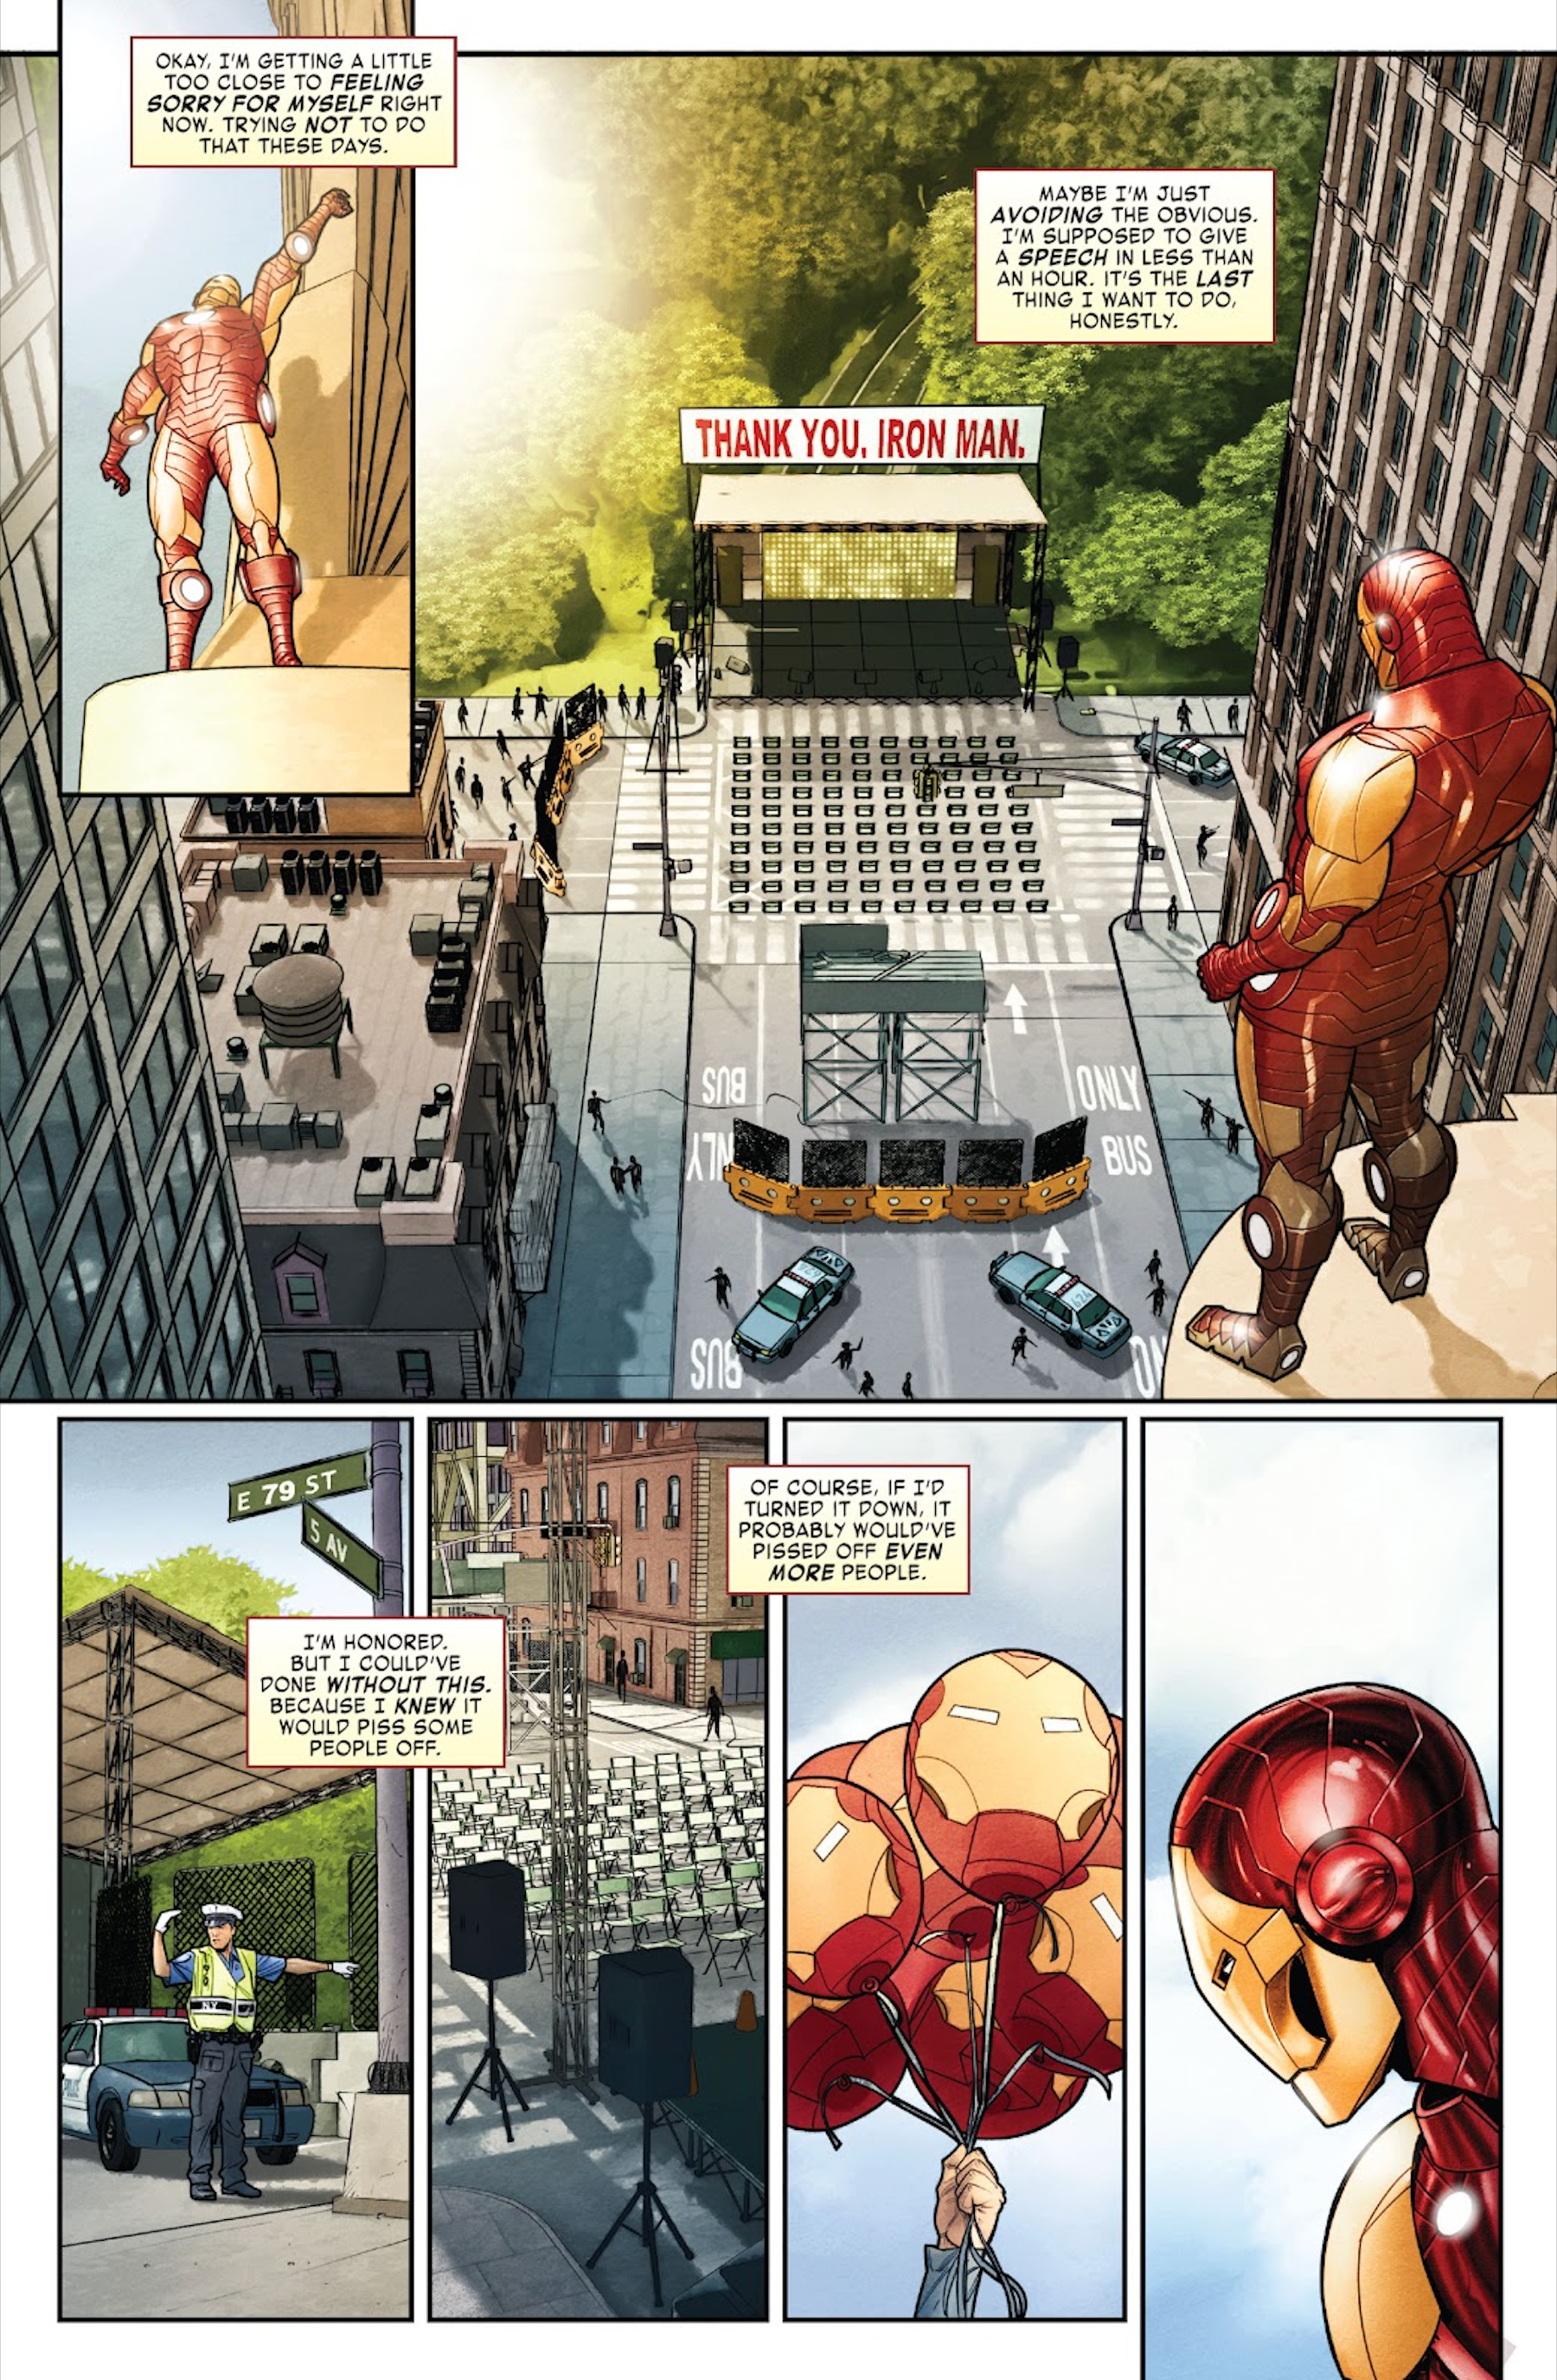 День Железного человека в комиксах Marvel